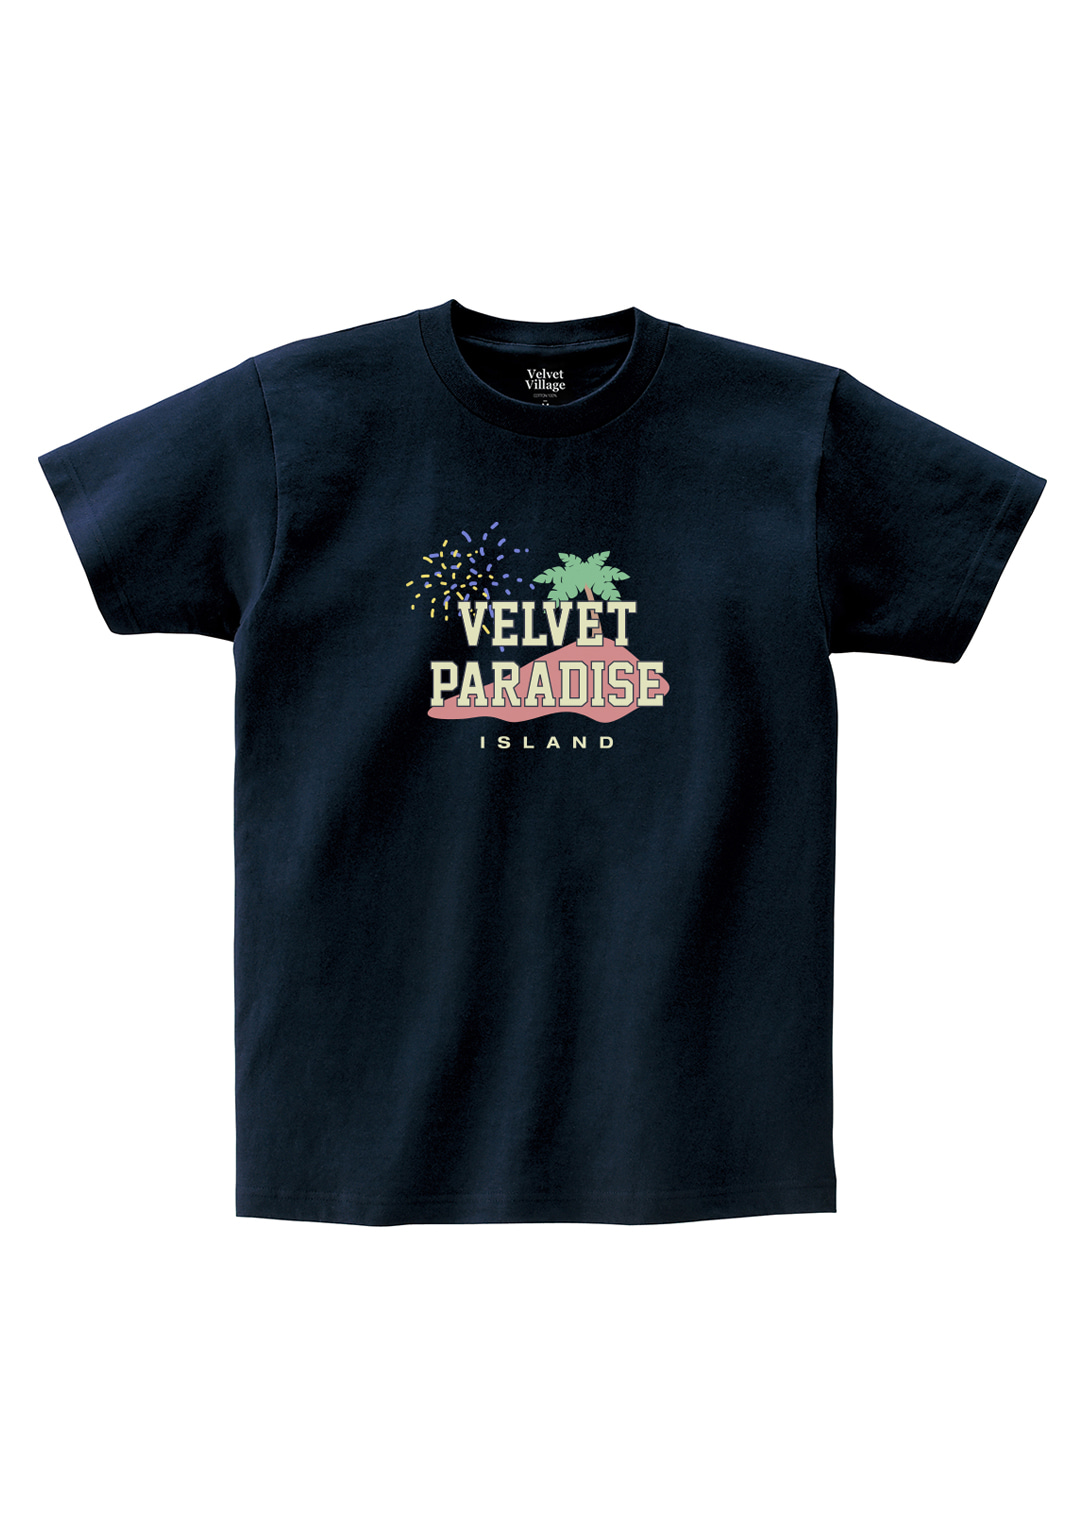 Velvet Paradise T-shirt (Navy)